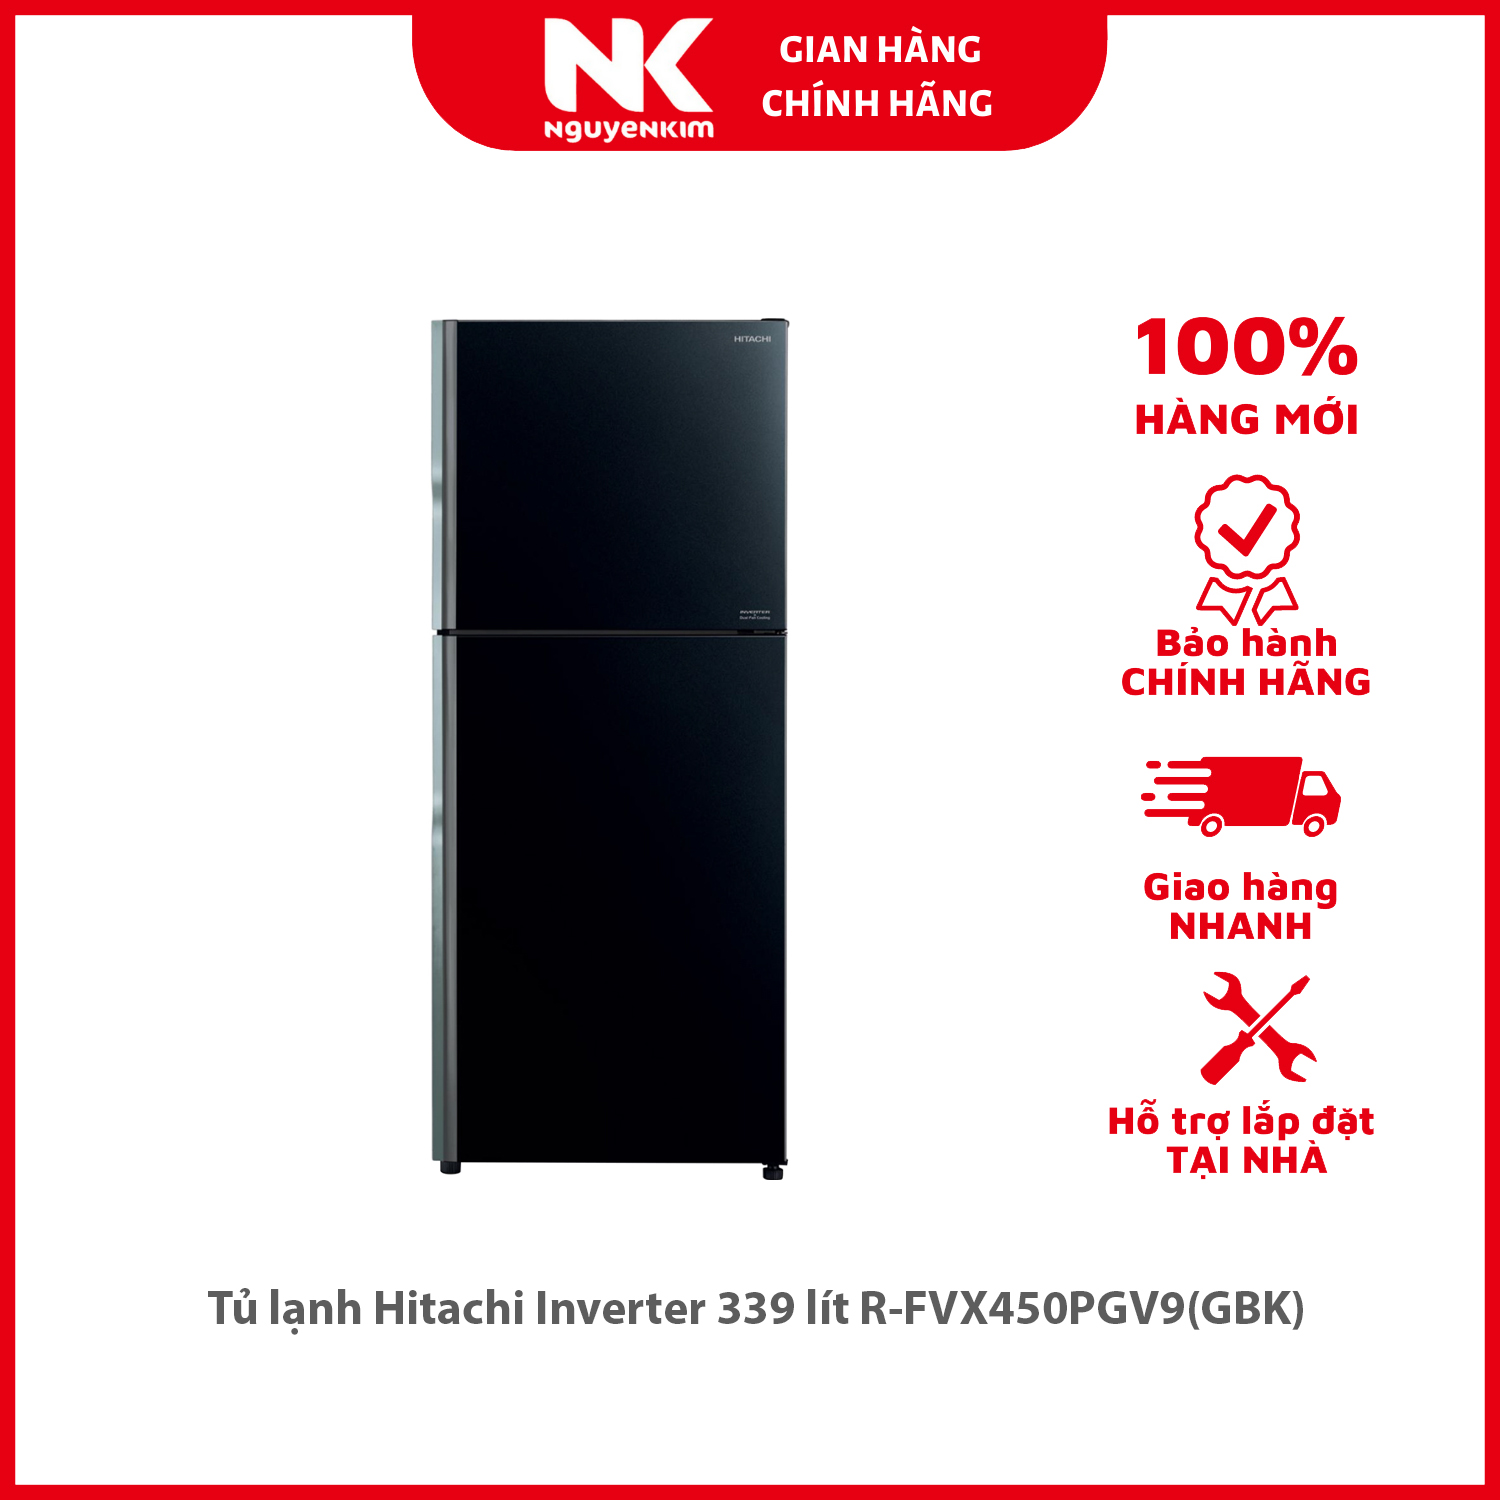 Tủ lạnh Hitachi Inverter 339 lít R-FVX450PGV9(GBK) - Hàng chính hãng [Giao hàng toàn quốc]